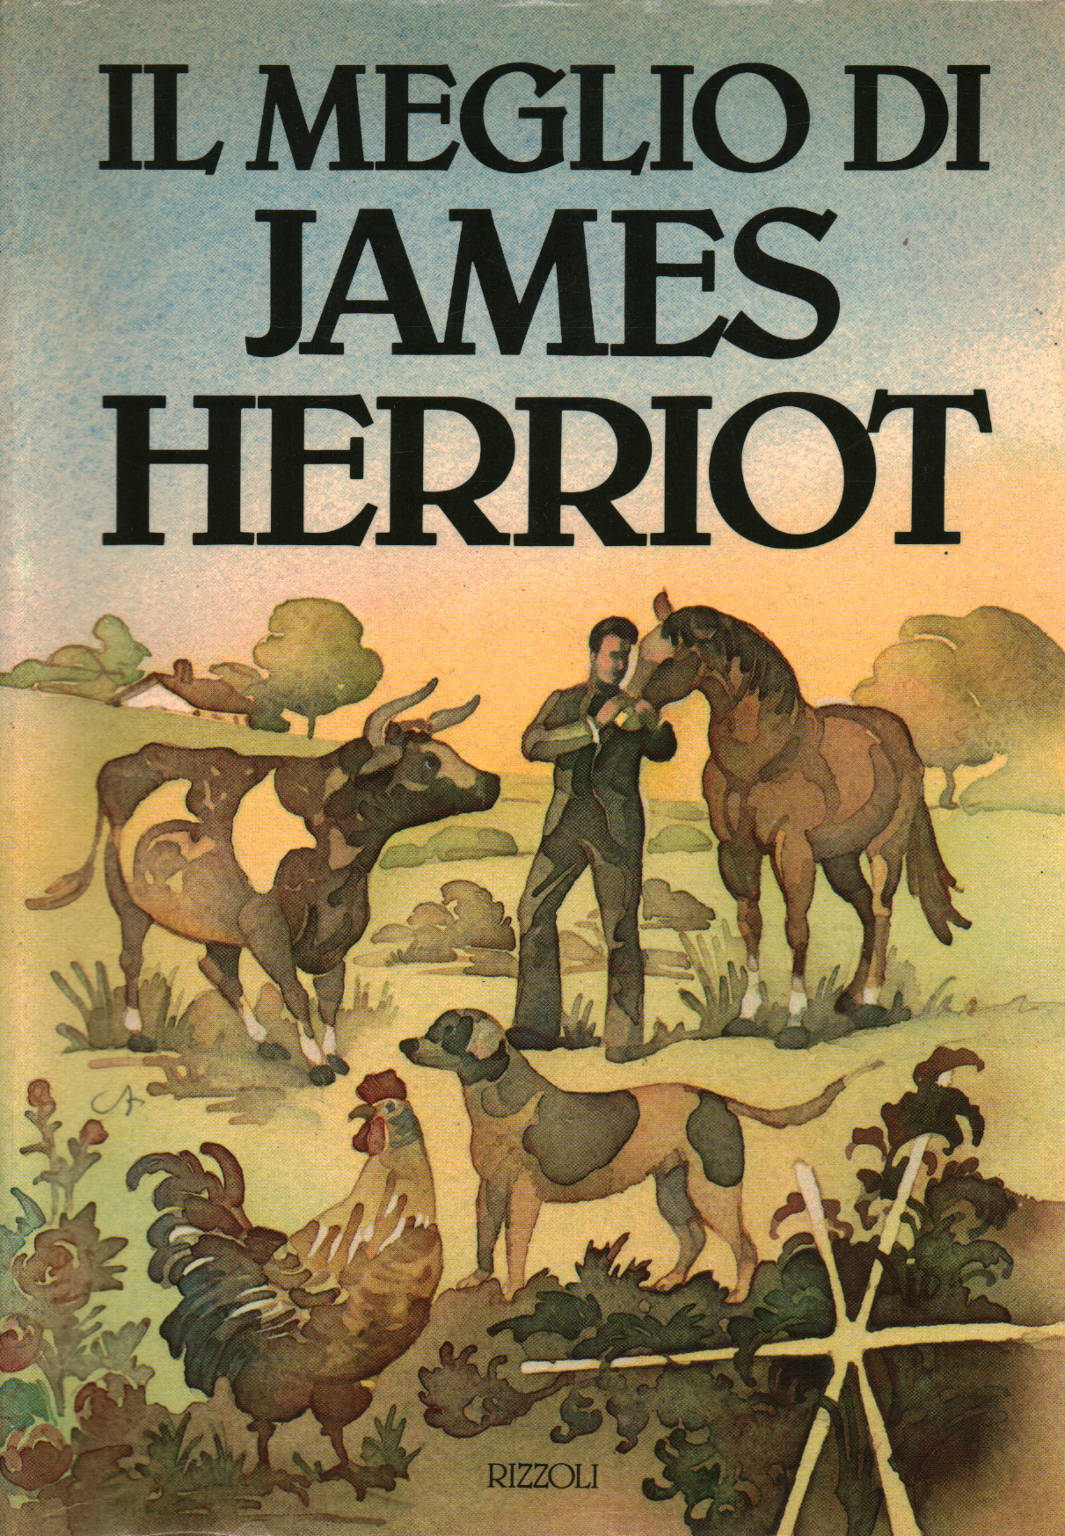 The best of James Herriot